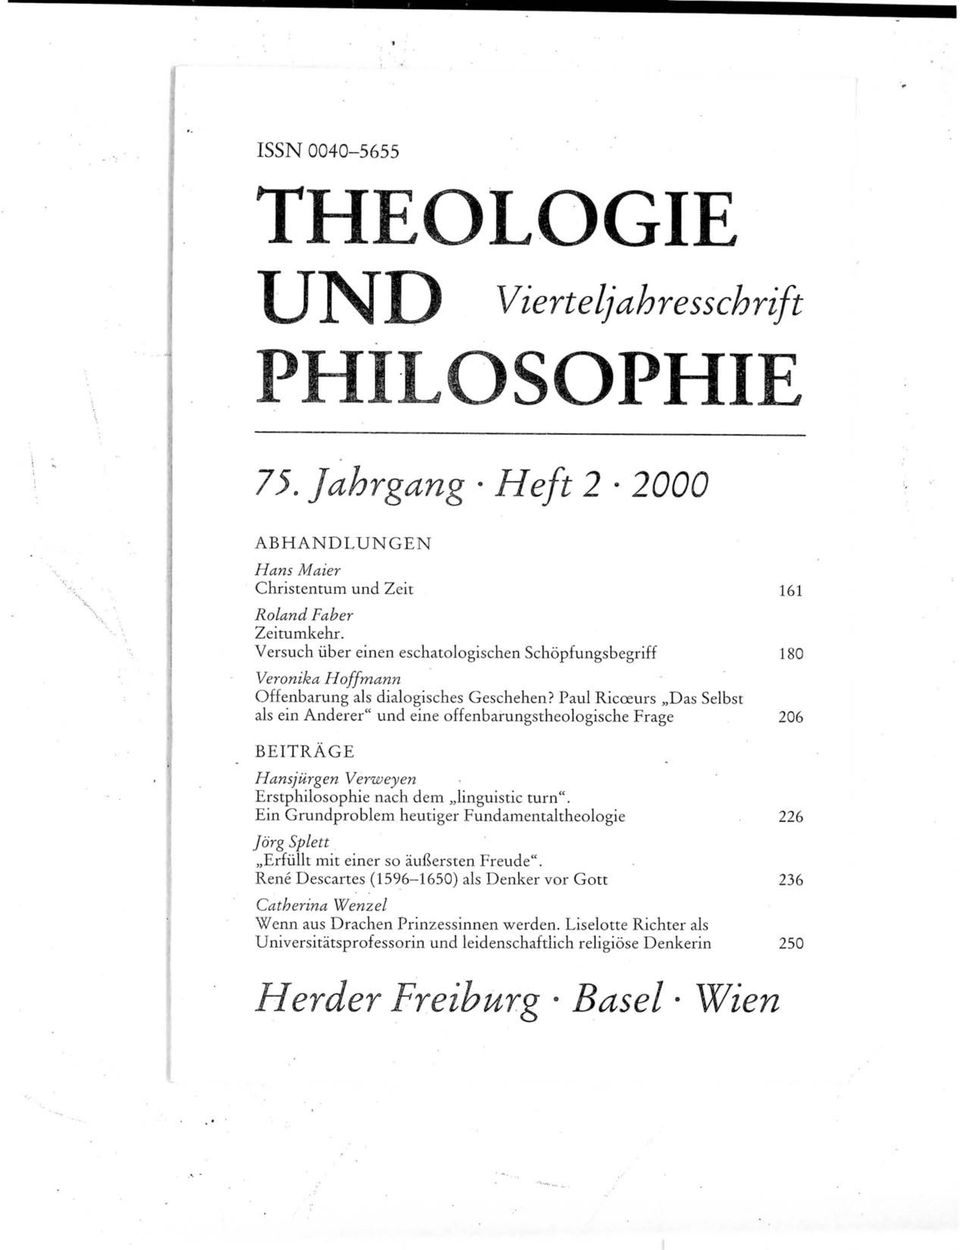 Paul Ricoeurs,,Das Selbst als ein Anderer" und eine offenbarungstheologische Frage 206 BEITRAGE Hansjiirgen Verweyen Erstphilosophie nach dern,,imguistic turn".